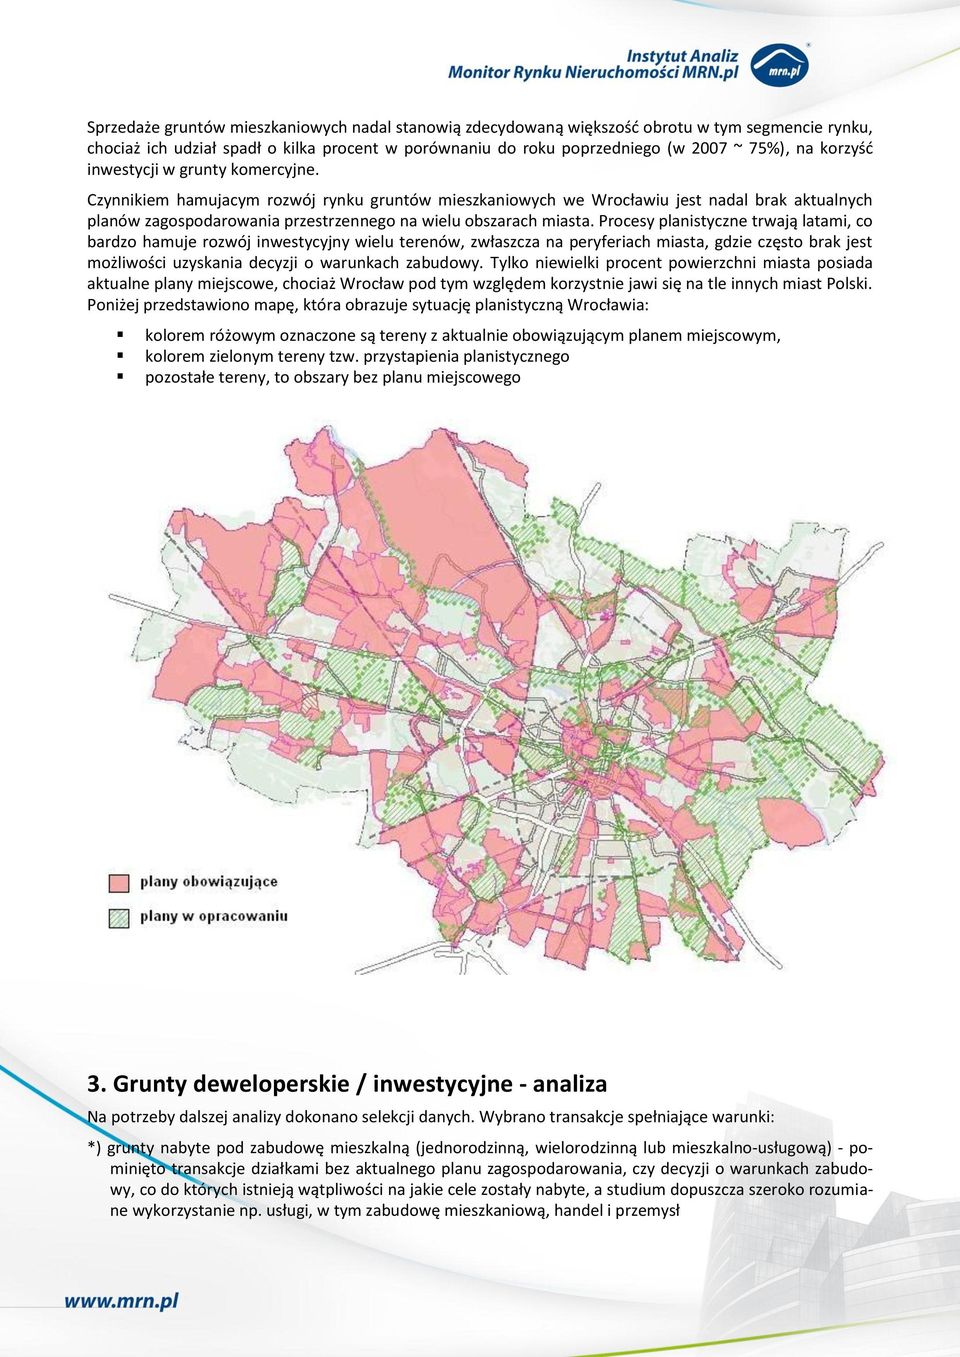 Czynnikiem hamujacym rozwój rynku gruntów mieszkaniowych we Wrocławiu jest nadal brak aktualnych planów zagospodarowania przestrzennego na wielu obszarach miasta.